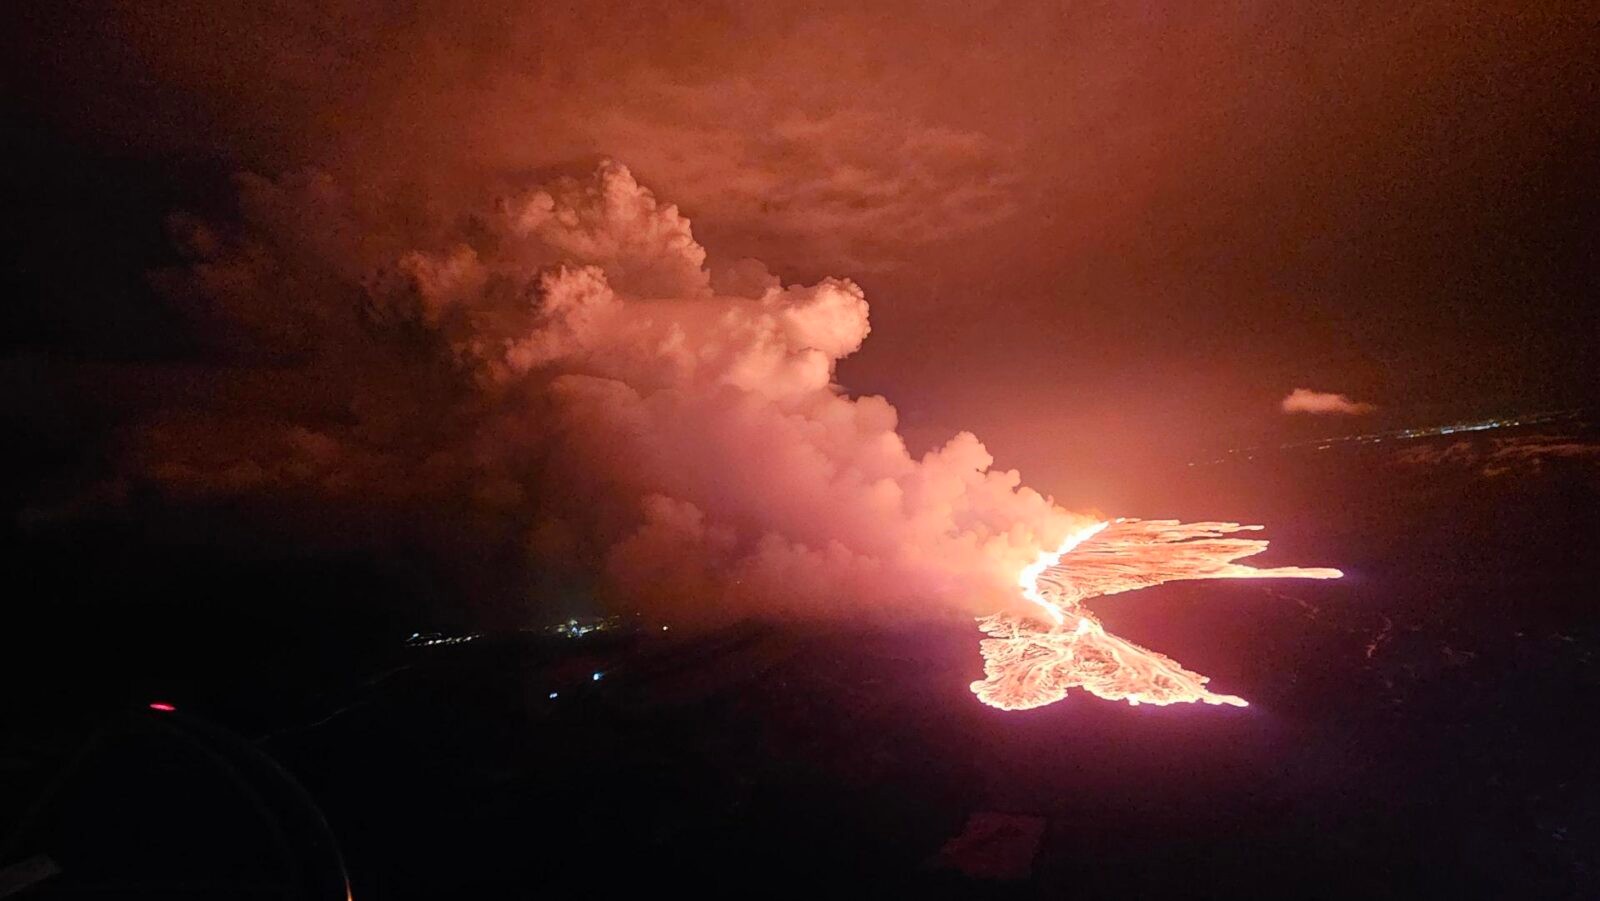 Zdjęcie najnowszej erupcji lawy na półwyspie Reykjanes / źródło: Islandzkie Biuro Meteorologiczne, materiały prasowe
